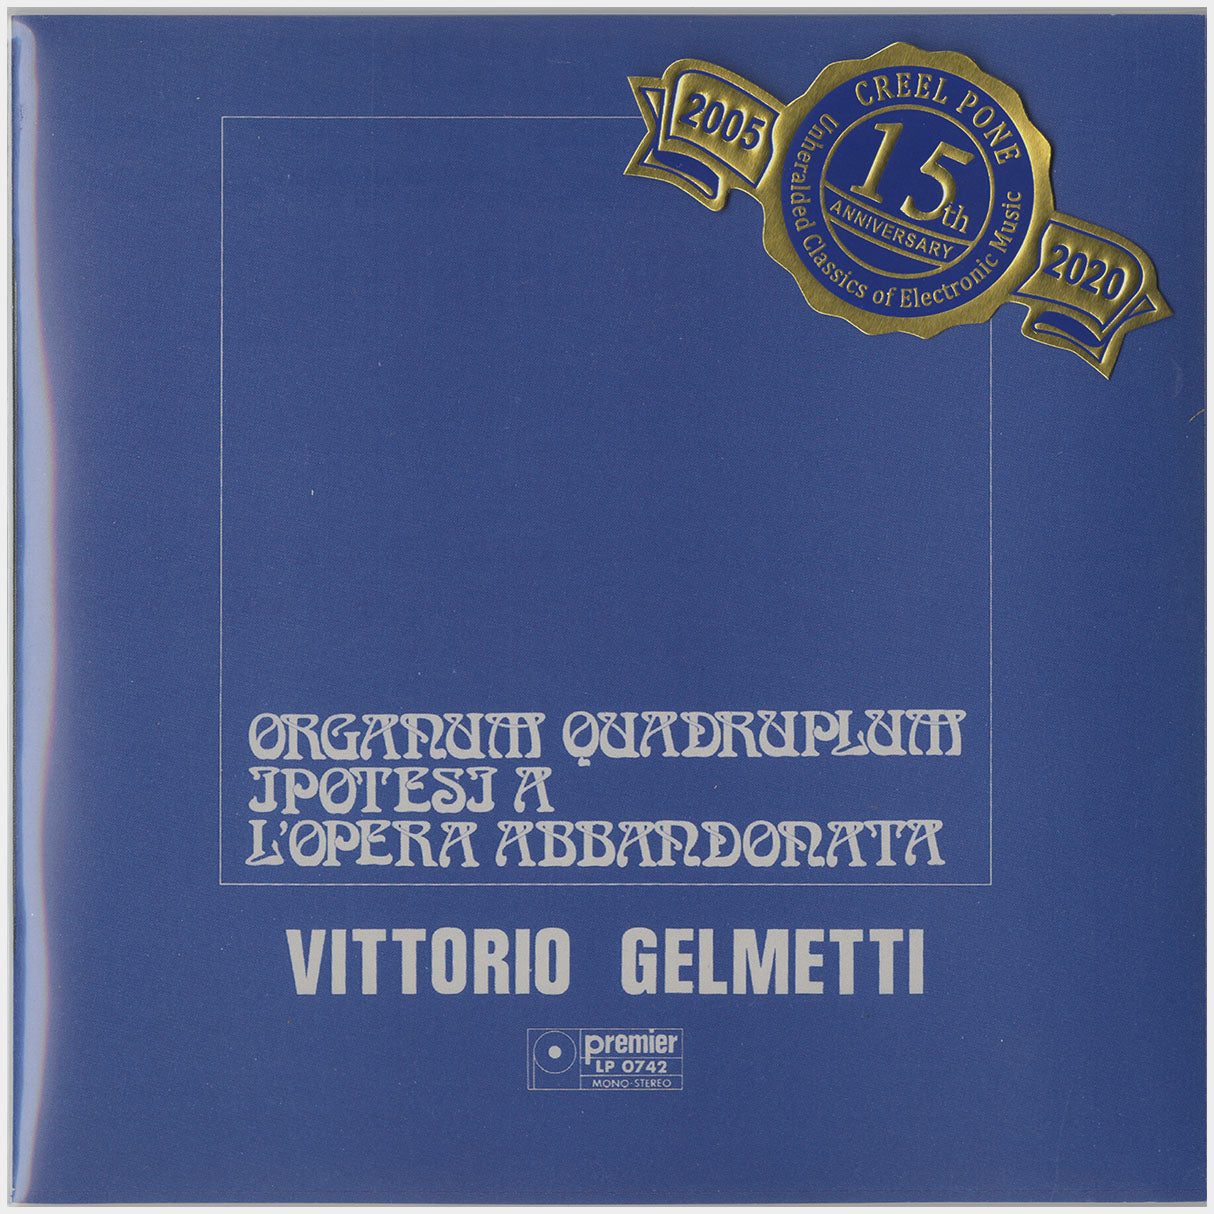 [CP 123 CD] Vittorio Gelmetti; Organum Quadruplum